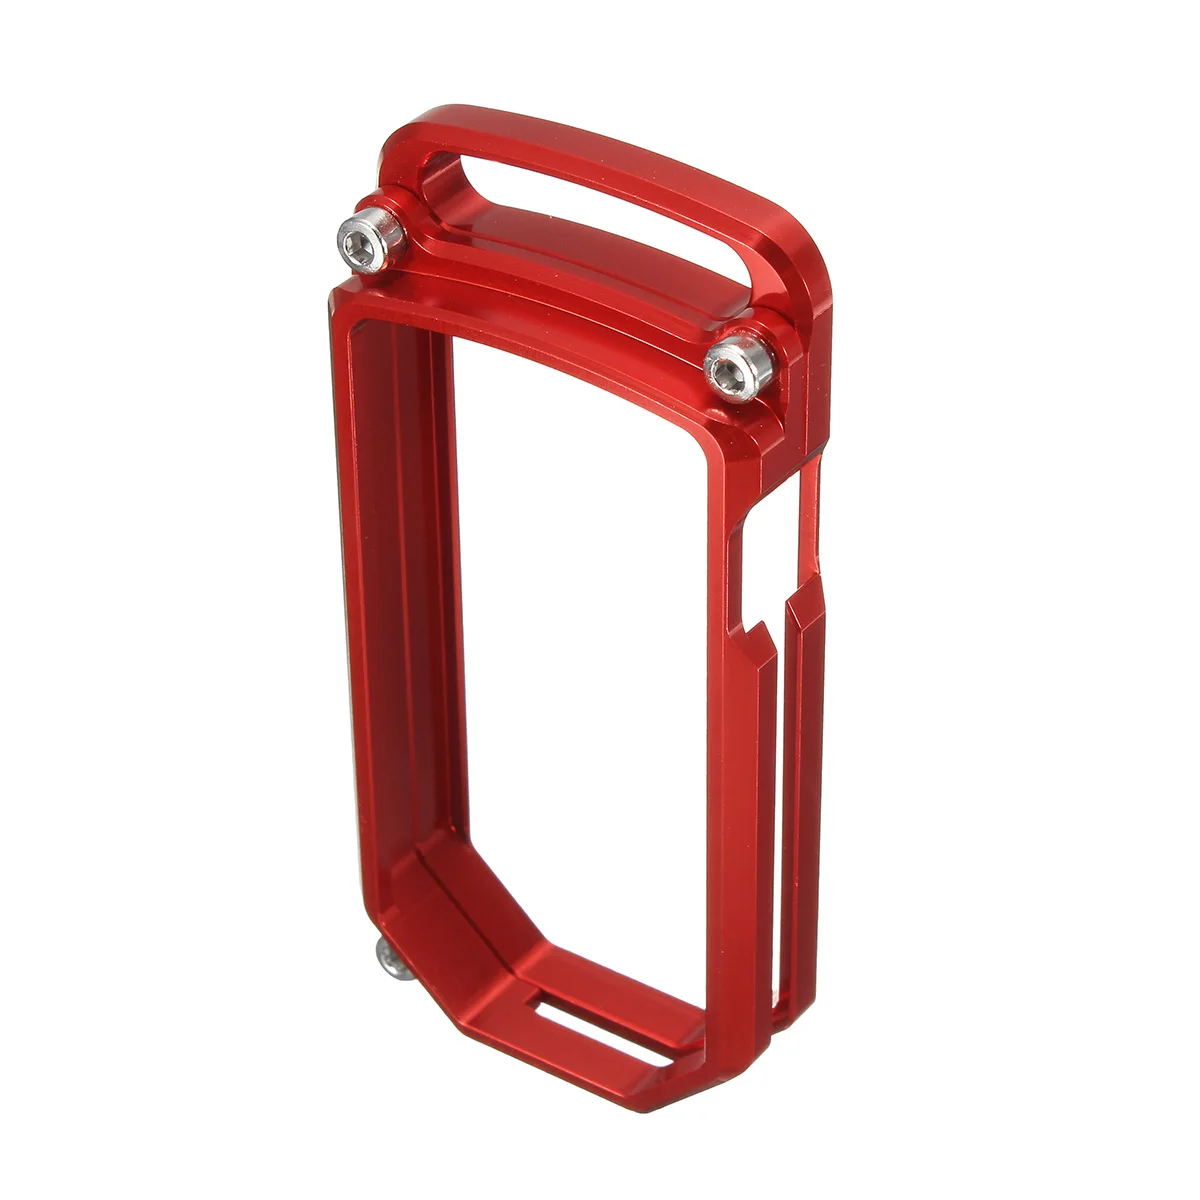 3-Цвет мотоциклетные CNC ключ чехол для крышки оправа с цепочкой держатель Алюминий для поездок на мотоцикле Ducati Diavel 1200 2011 2012 2013 - Название цвета: Красный